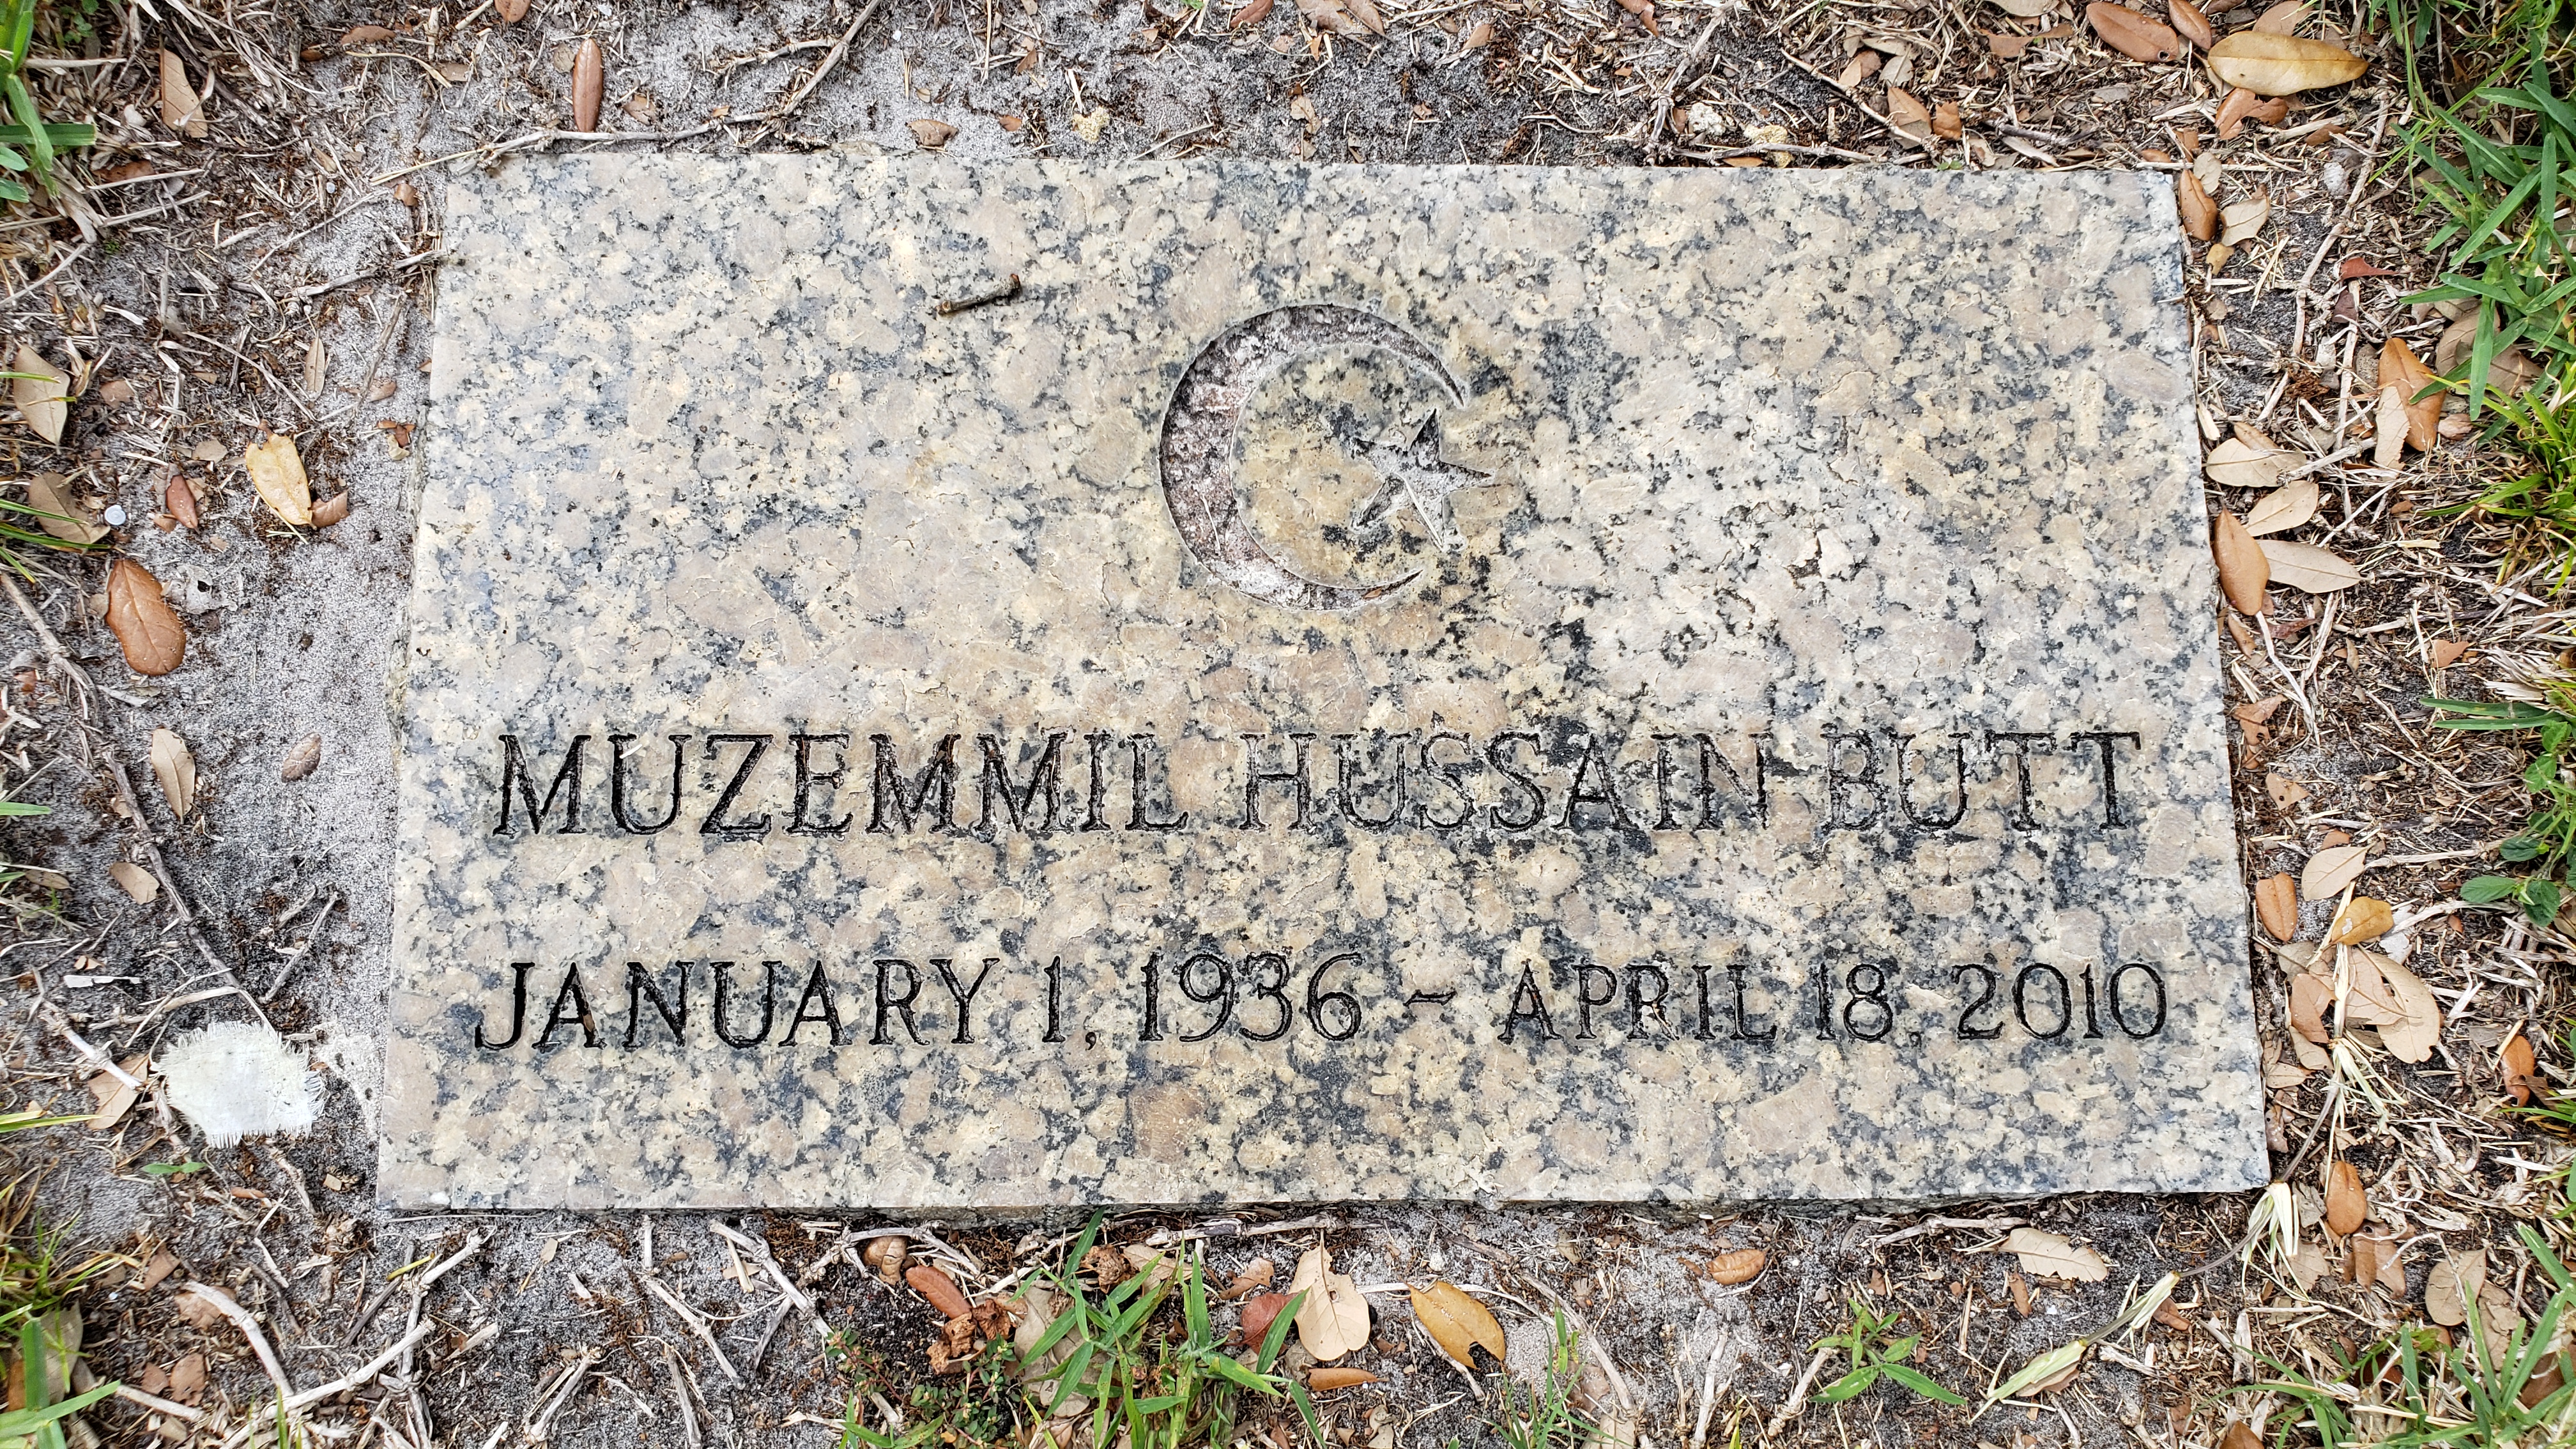 Muzemmil Hussain Butt